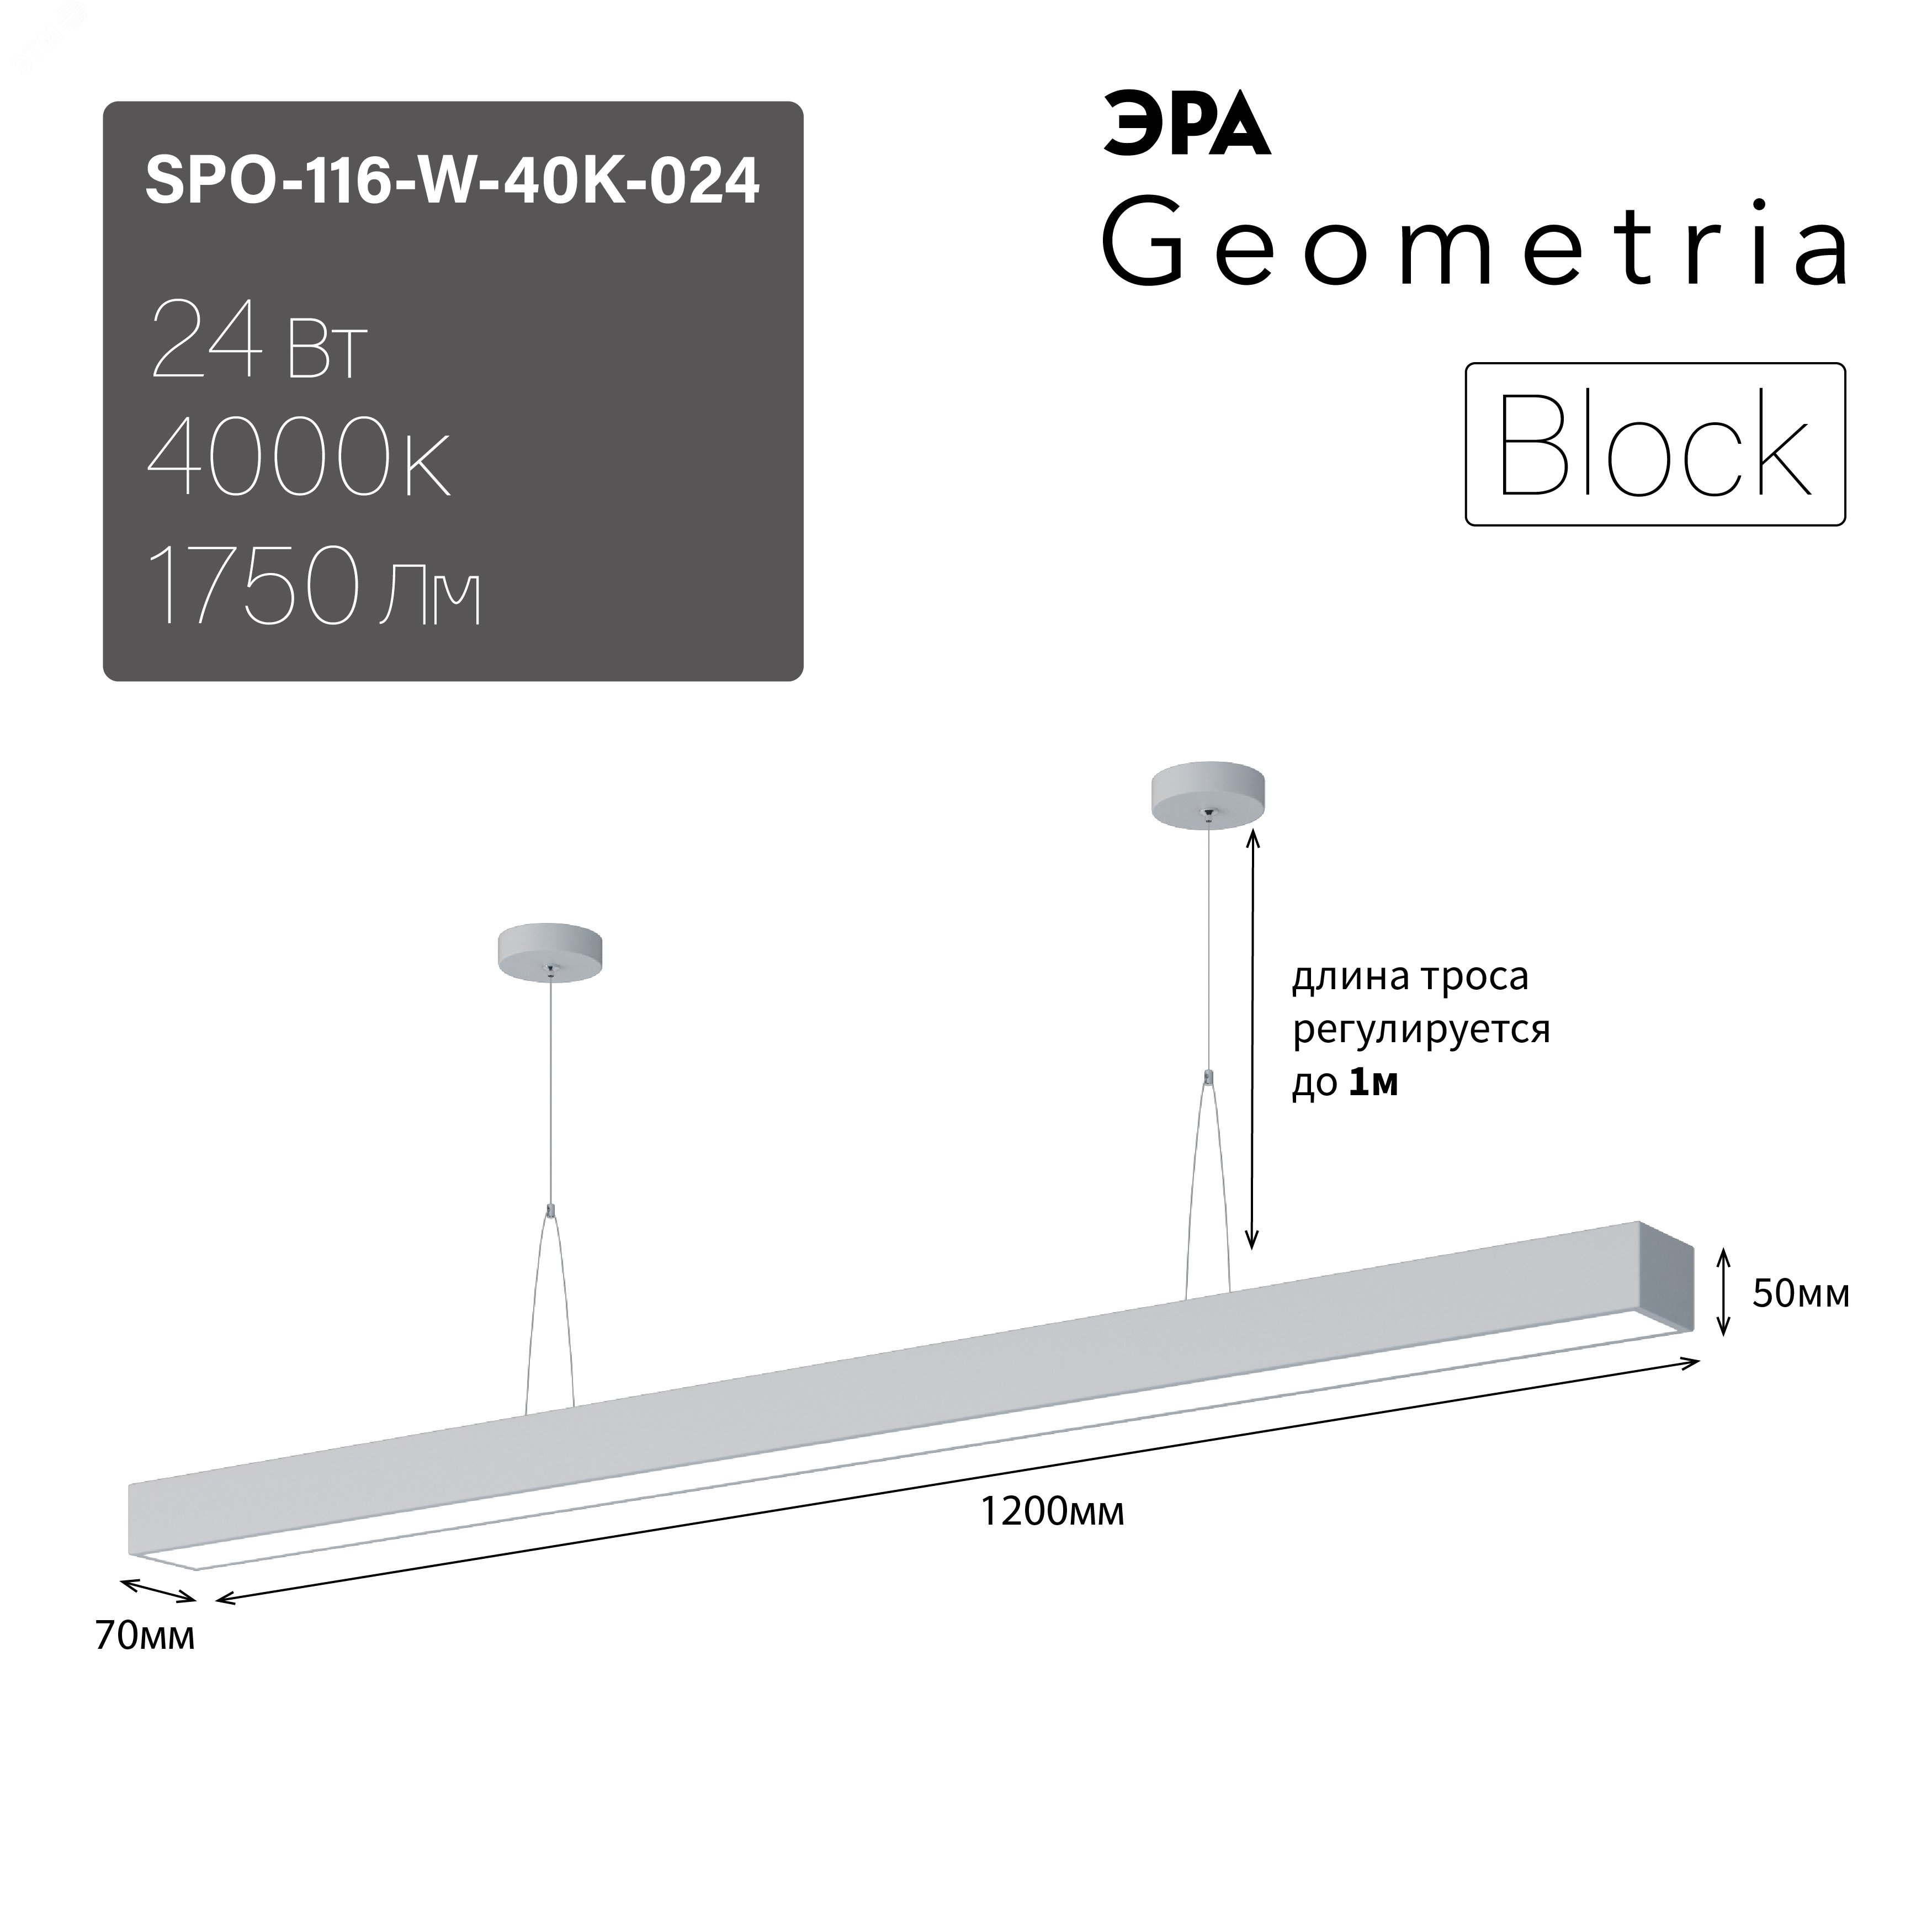 Светильник светодиодный Geometria Block SPO-116-W-40K-024 24Вт 4000К 1750Лм IP40 1200х70х50 белый подвесной Б0050548 ЭРА - превью 8